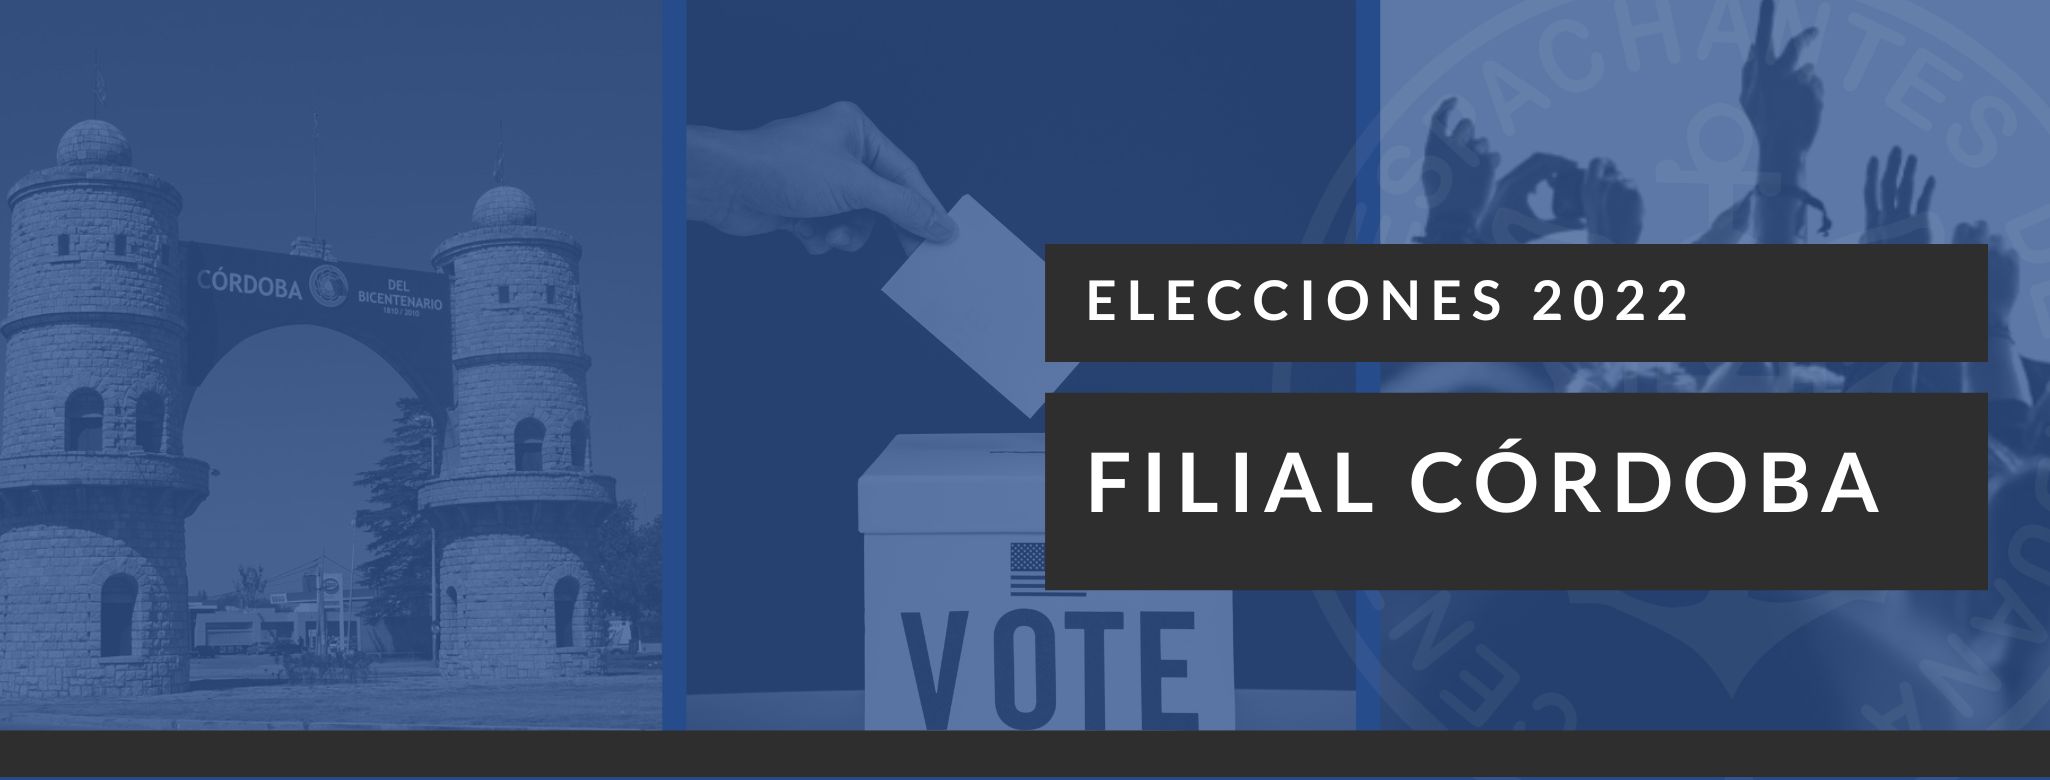 Elecciones en la Filial Córdoba 